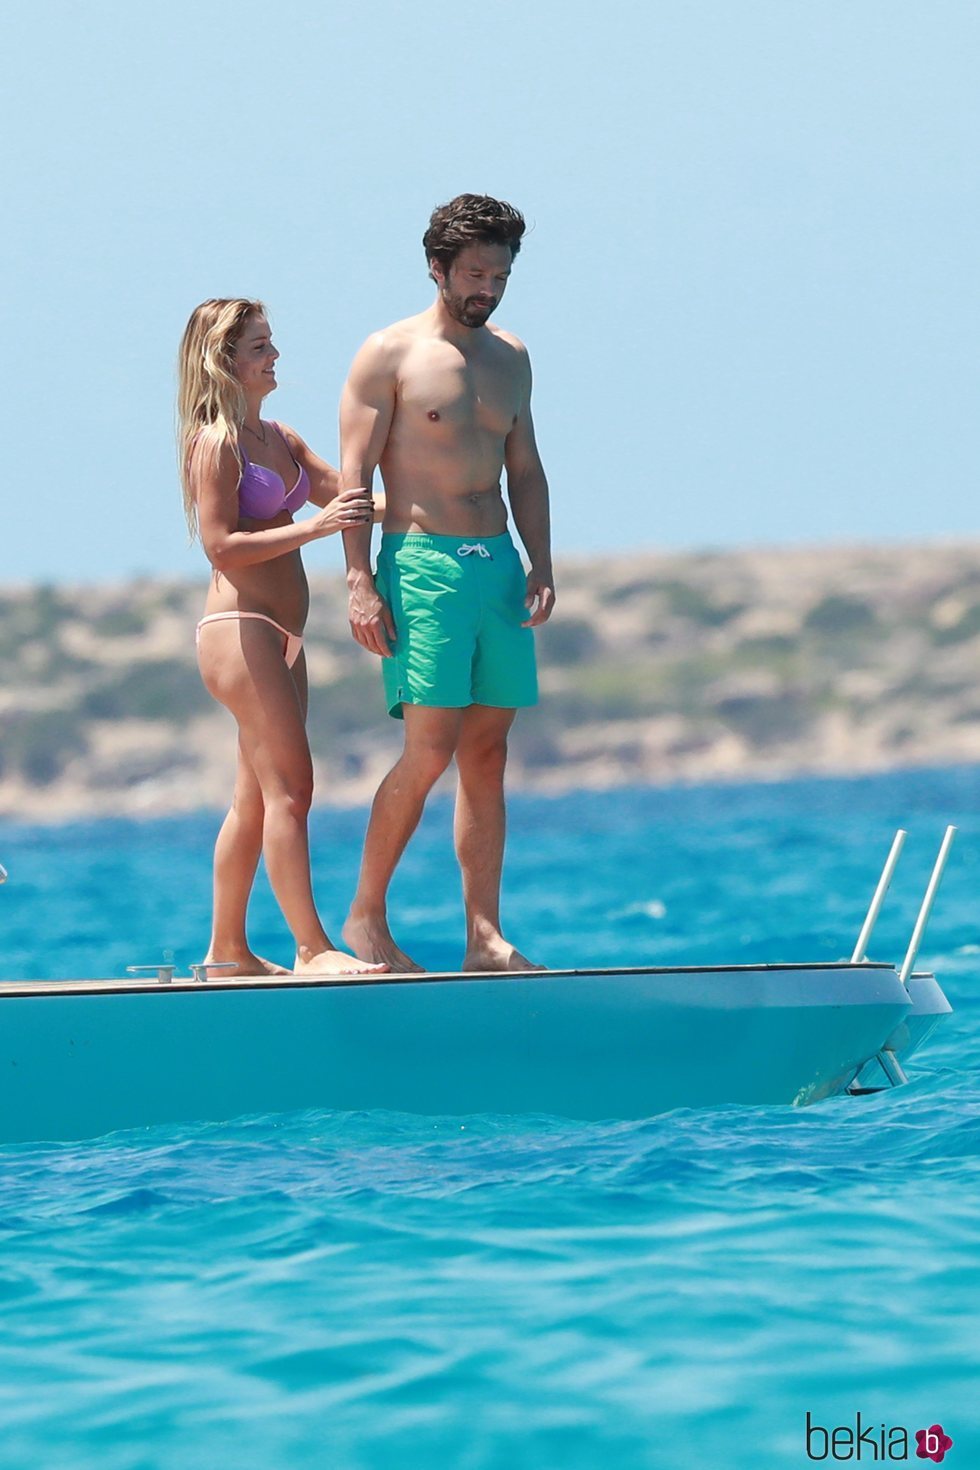 Alejandra Onieva y Sebastian Stan de vacaciones en Ibiza